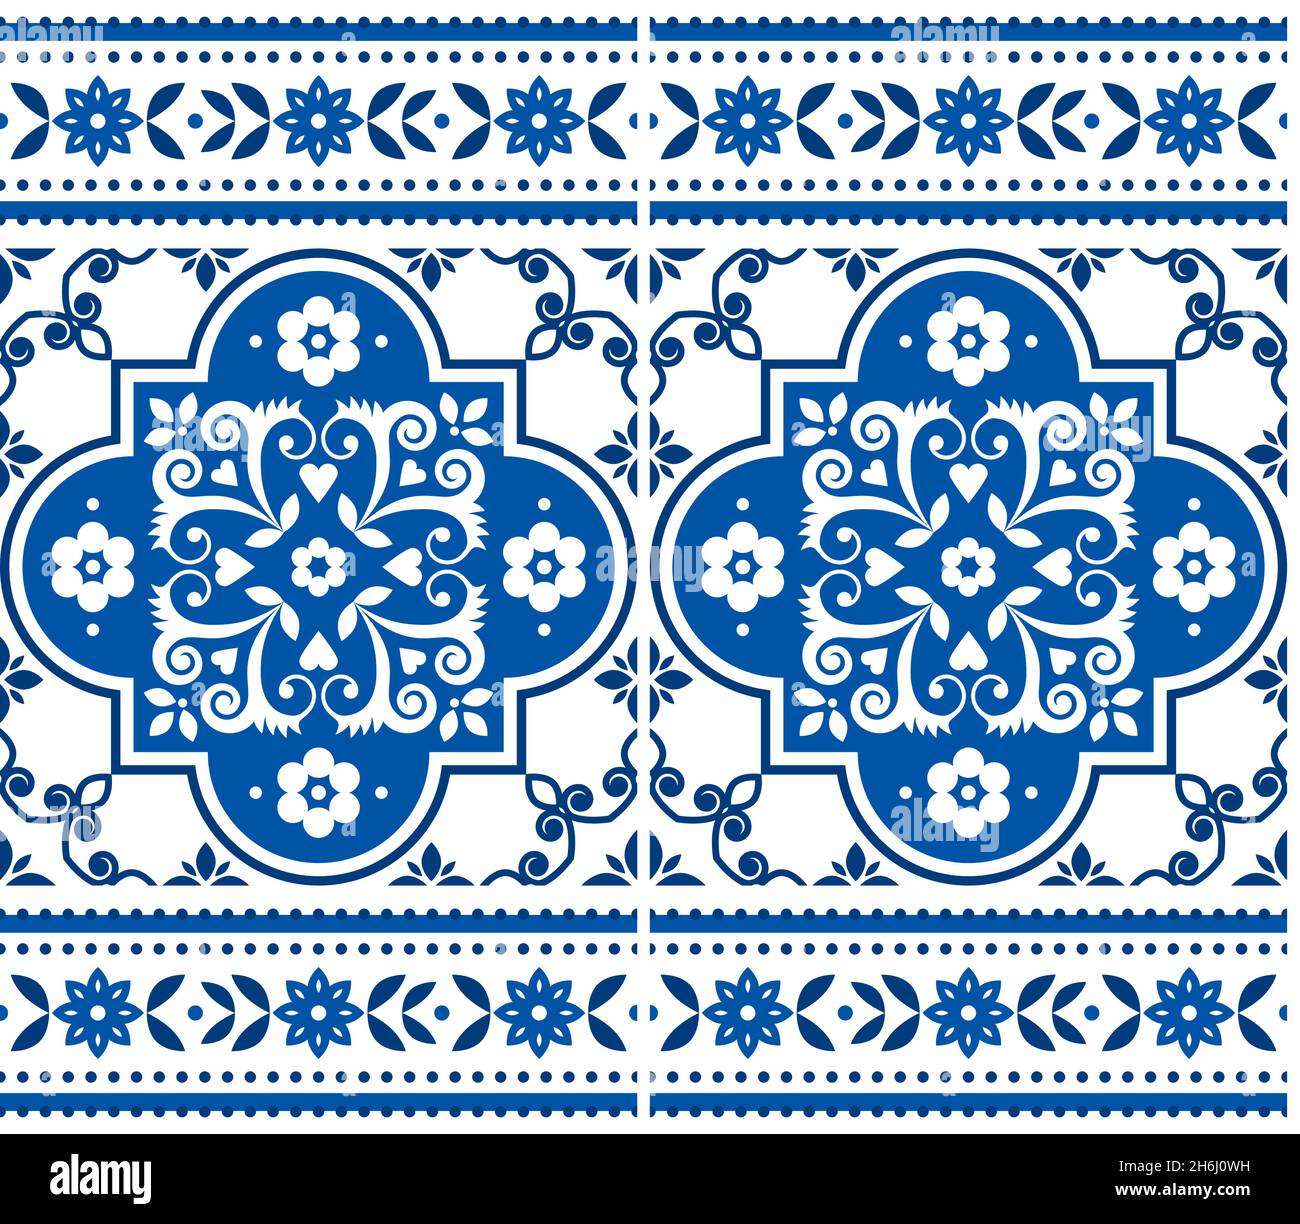 Azulejo azulejos sin costuras patrón vectorial en azul marino y blanco con un marco, diseño floral tradicional inspirado en el arte de azulejos de Lisboa, Portugal Ilustración del Vector